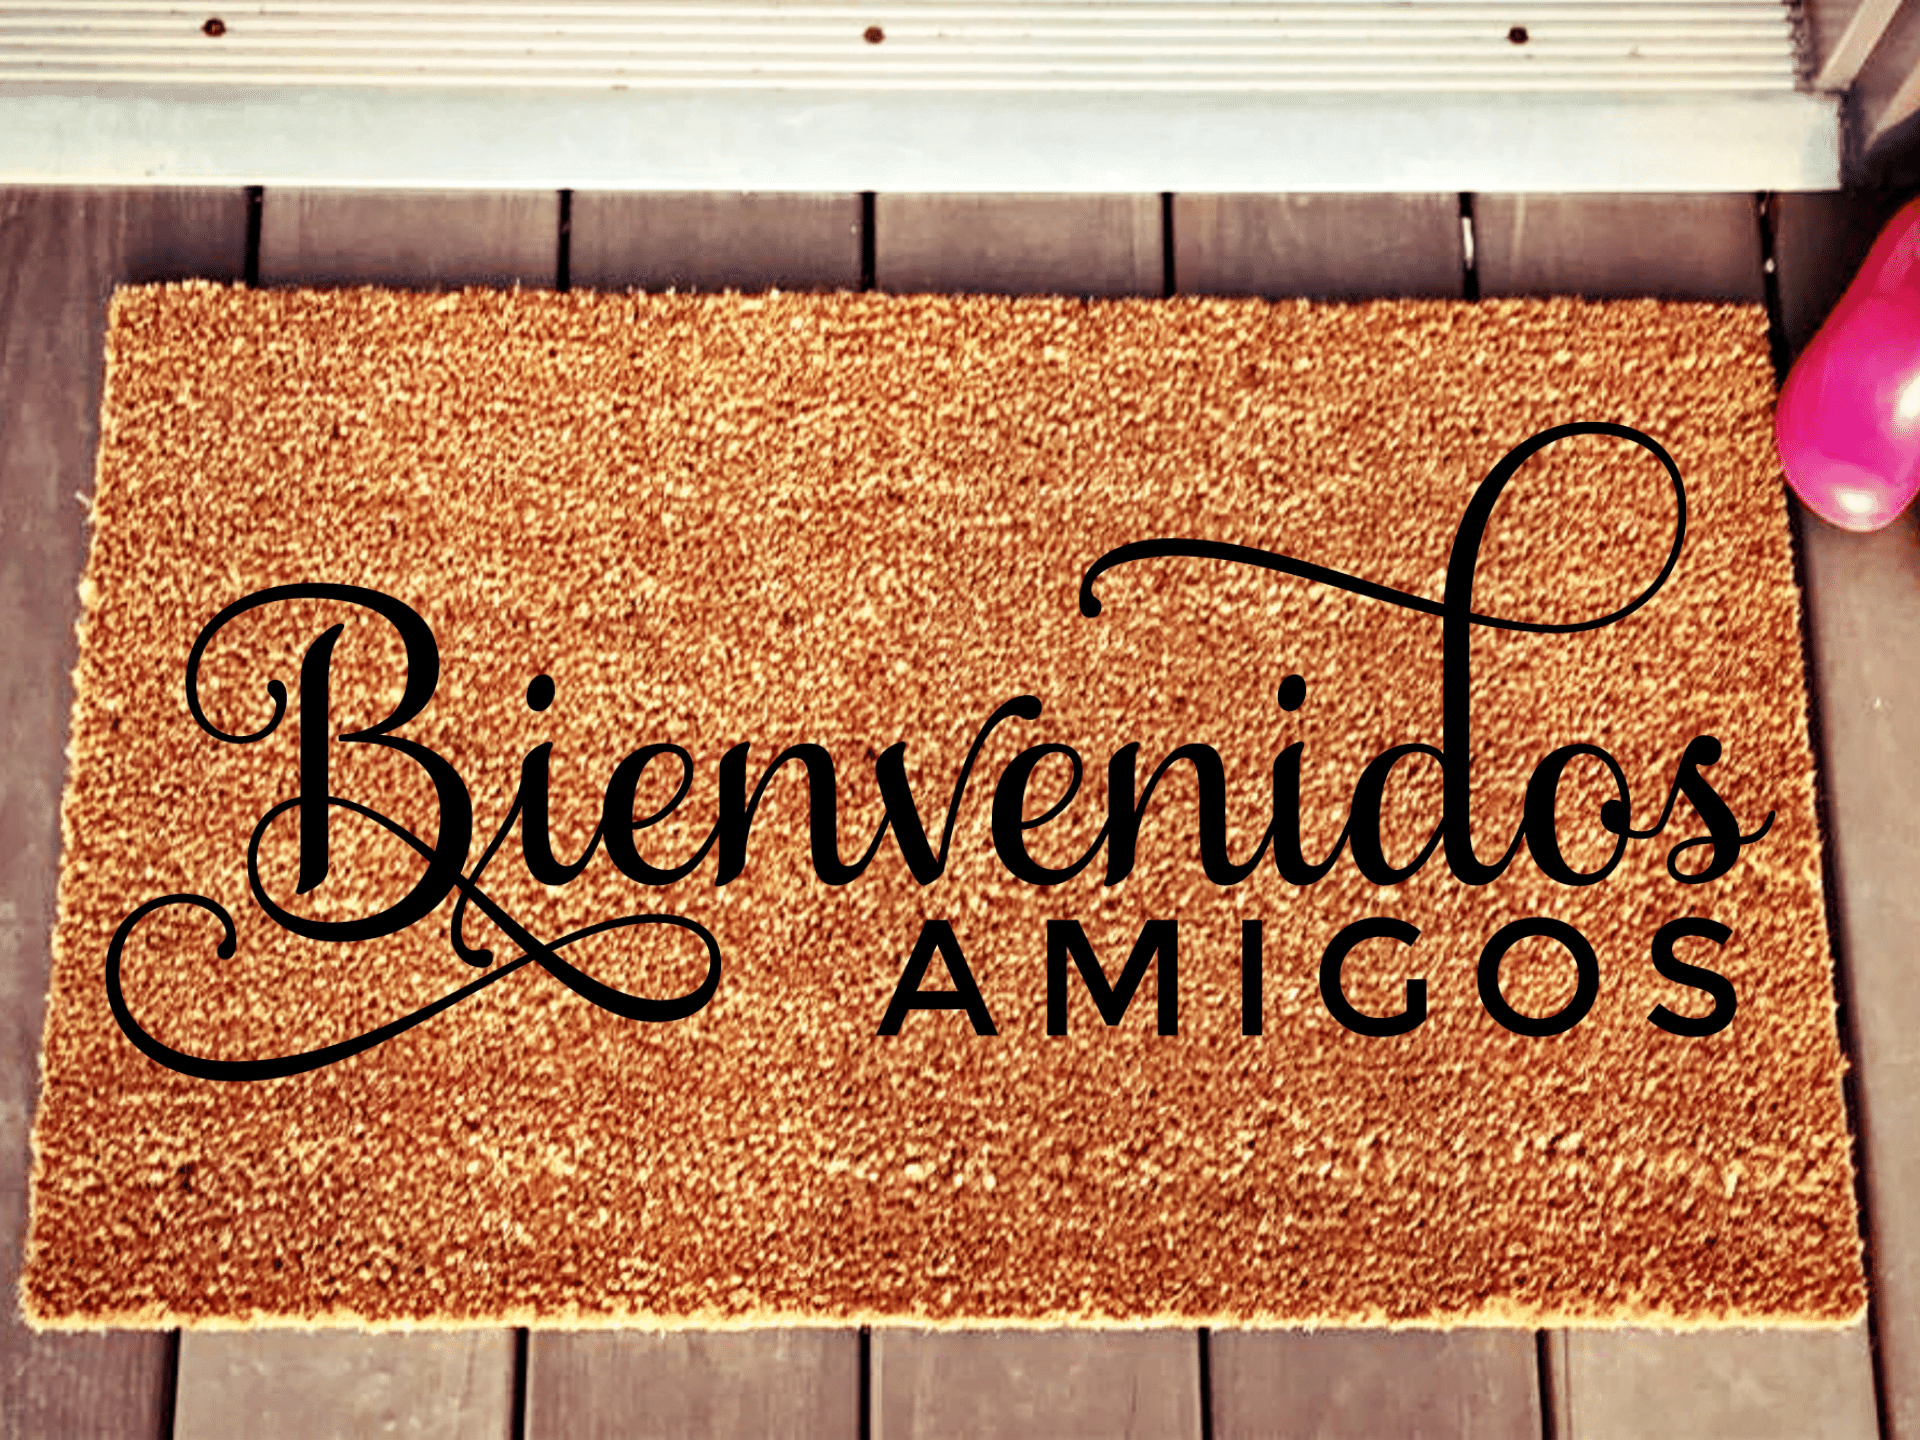 Bienvenidos Amigos Doormat - Personalised Doormat Australia